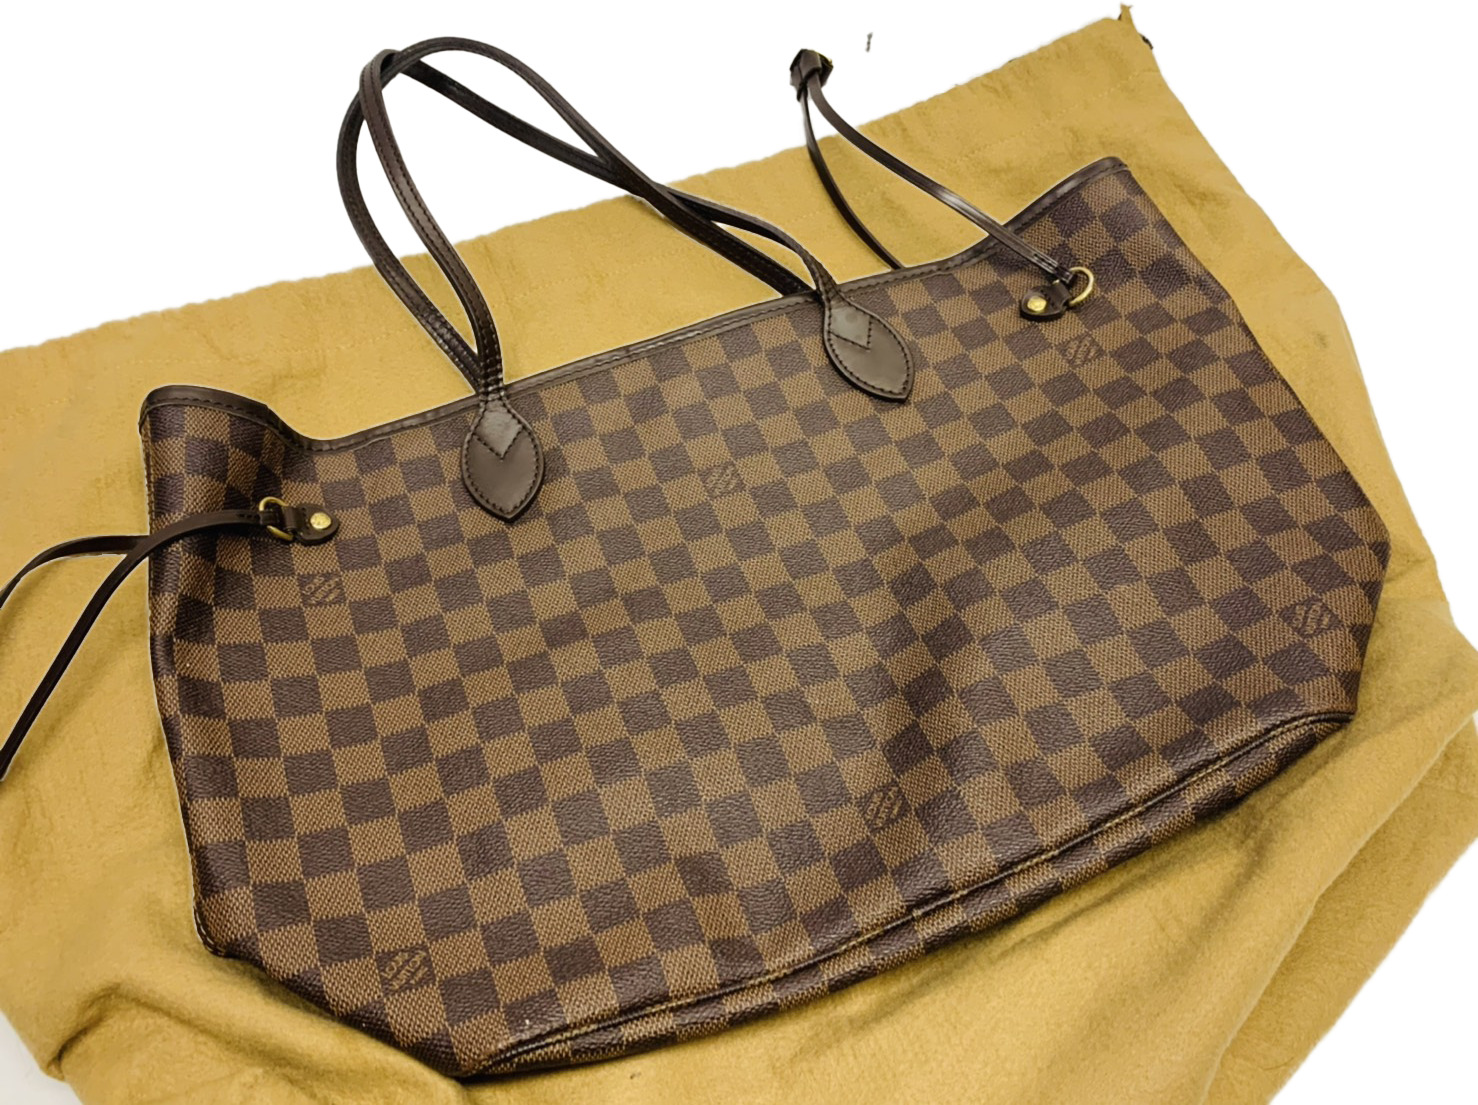 【Louis Vuitton:ダミエ:ネヴァーフル】のブランドバッグ出張買取実績